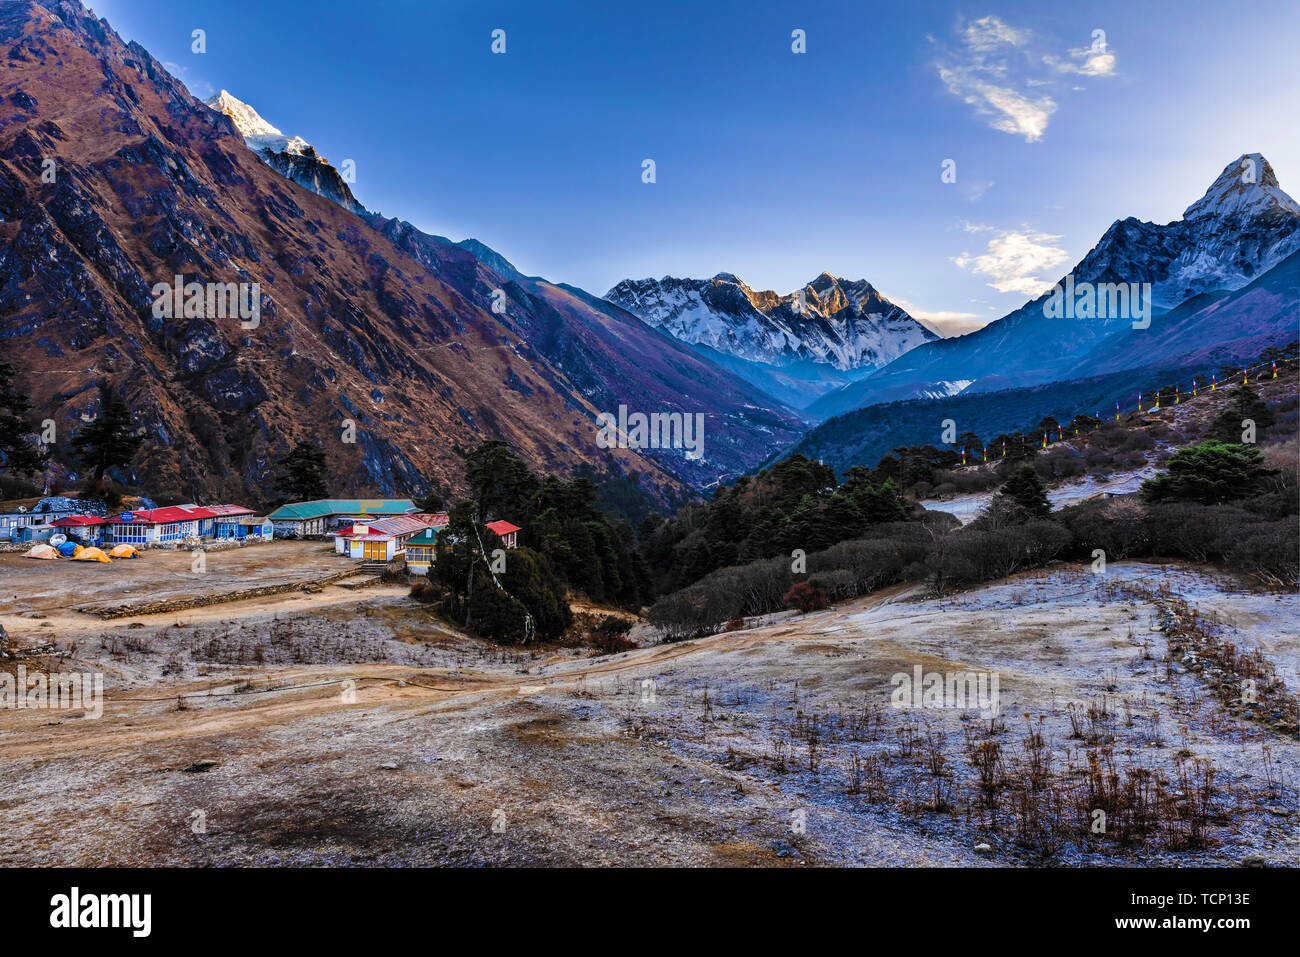 Vue panoramique de Mt. Everest, Lhotse, Nuptse et l'Ama Dablam de Tengboche sur la randonnée à vélo pour Camp de base de l'Everest au Népal. Banque D'Images